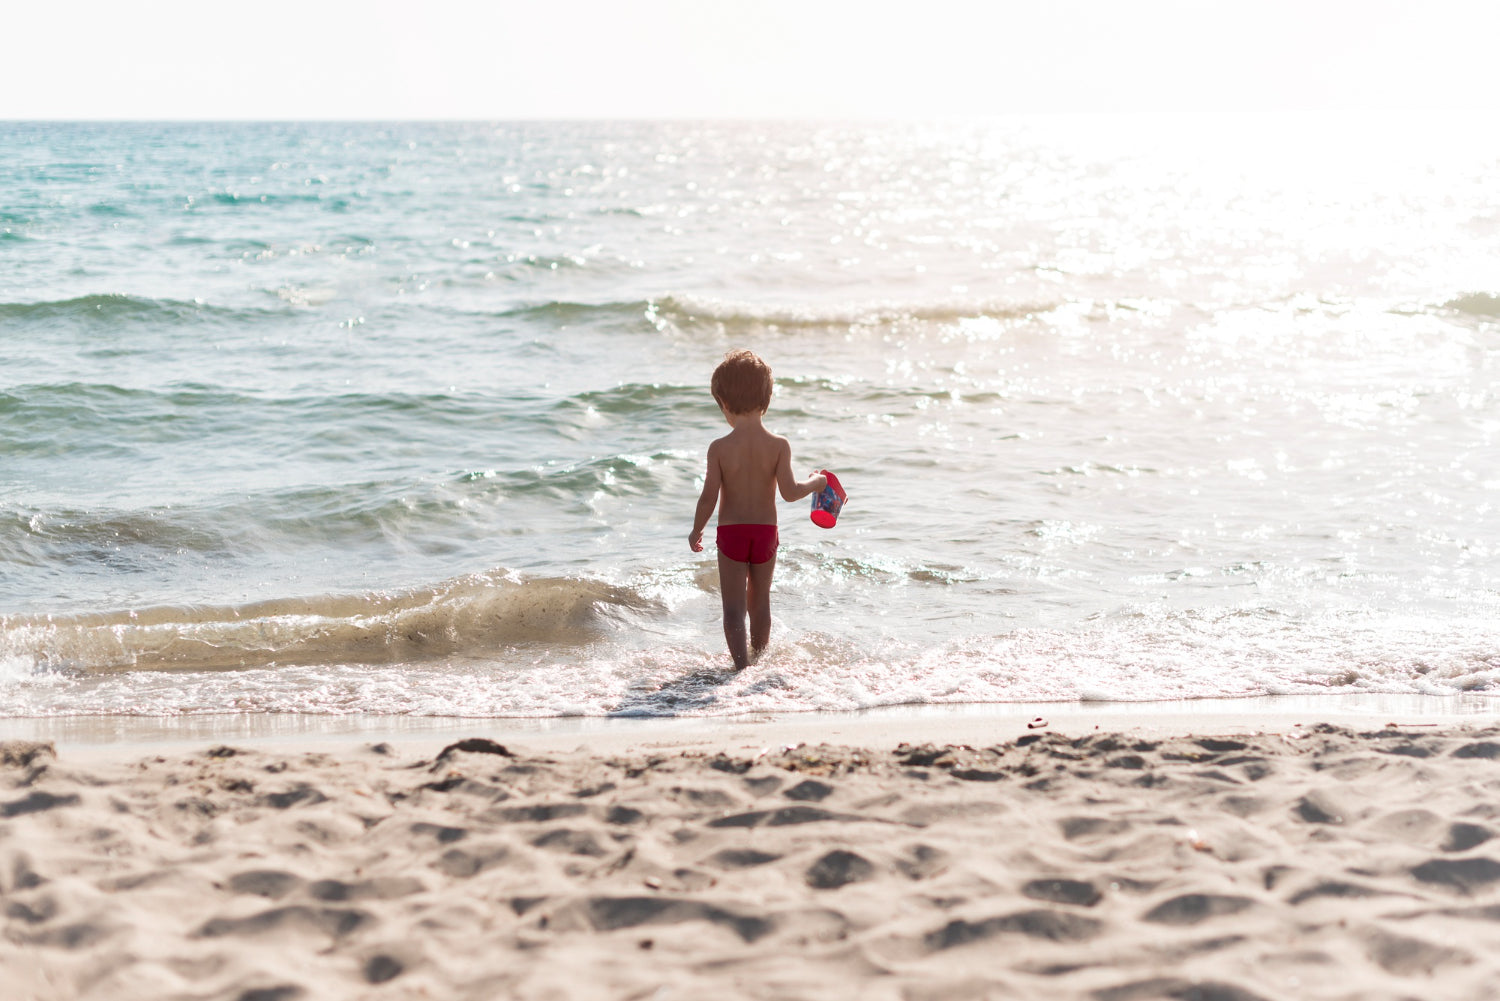 Prevenir é melhor: Como evitar o desaparecimento de crianças na praia